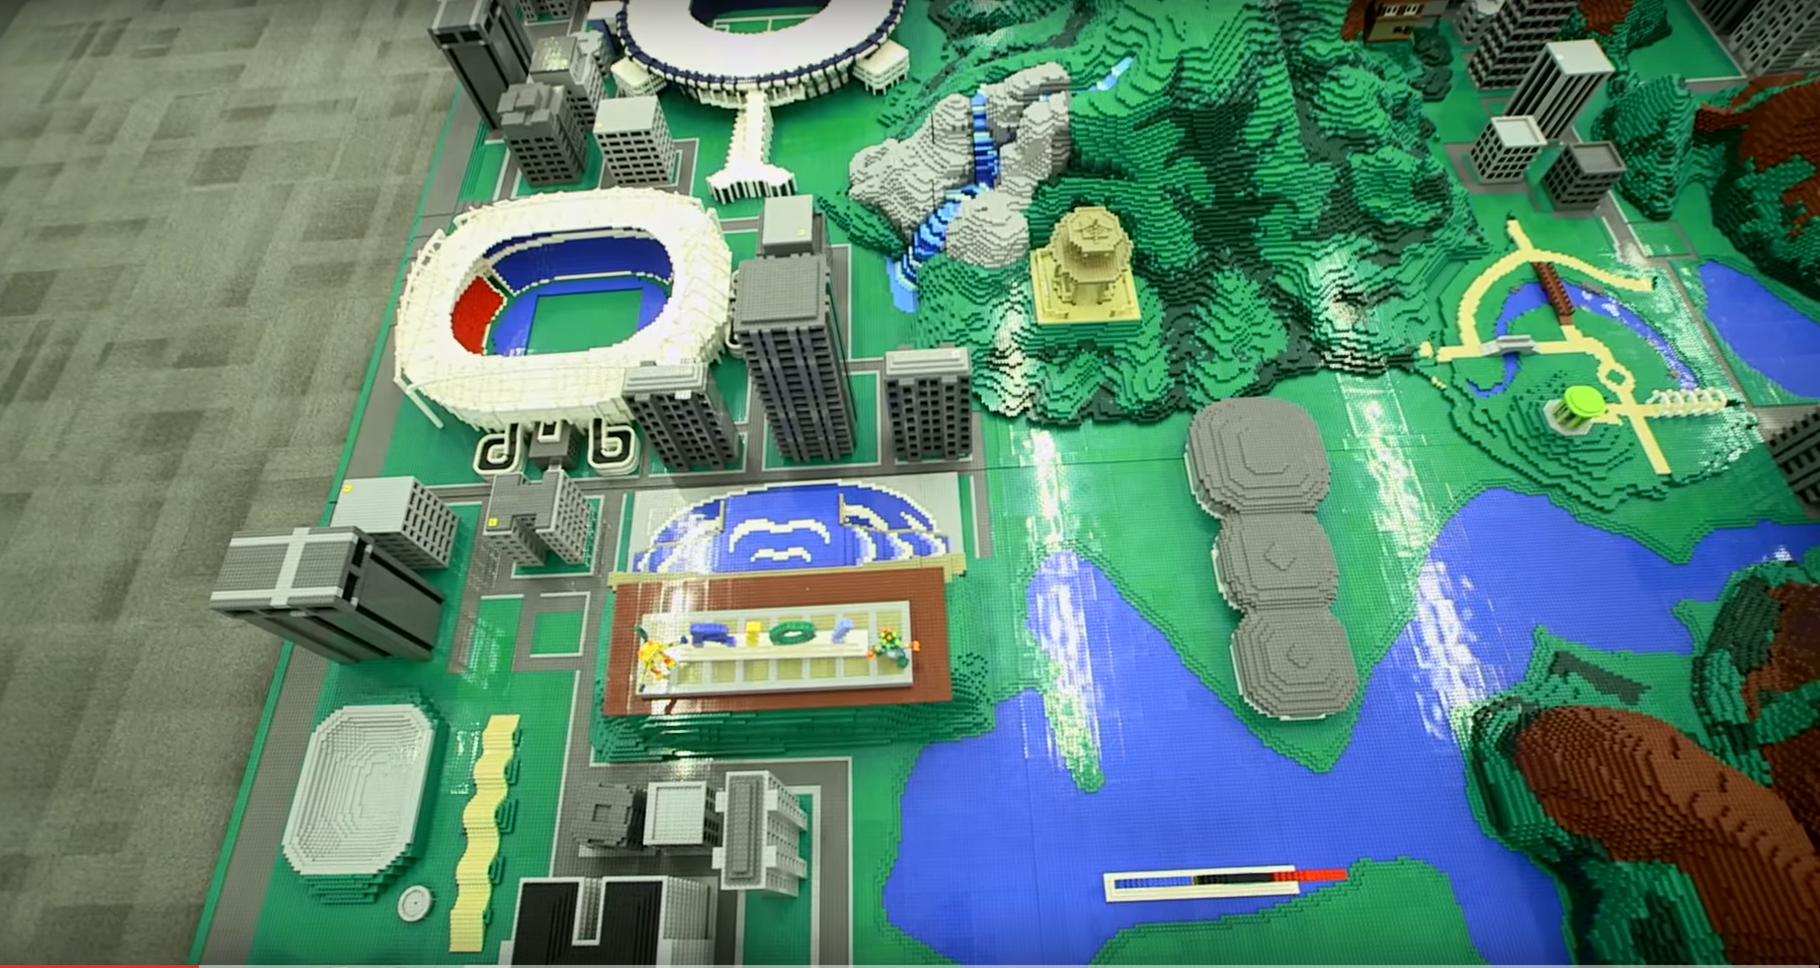 Lego recrea Río de Janeiro para conmemorar los Juegos